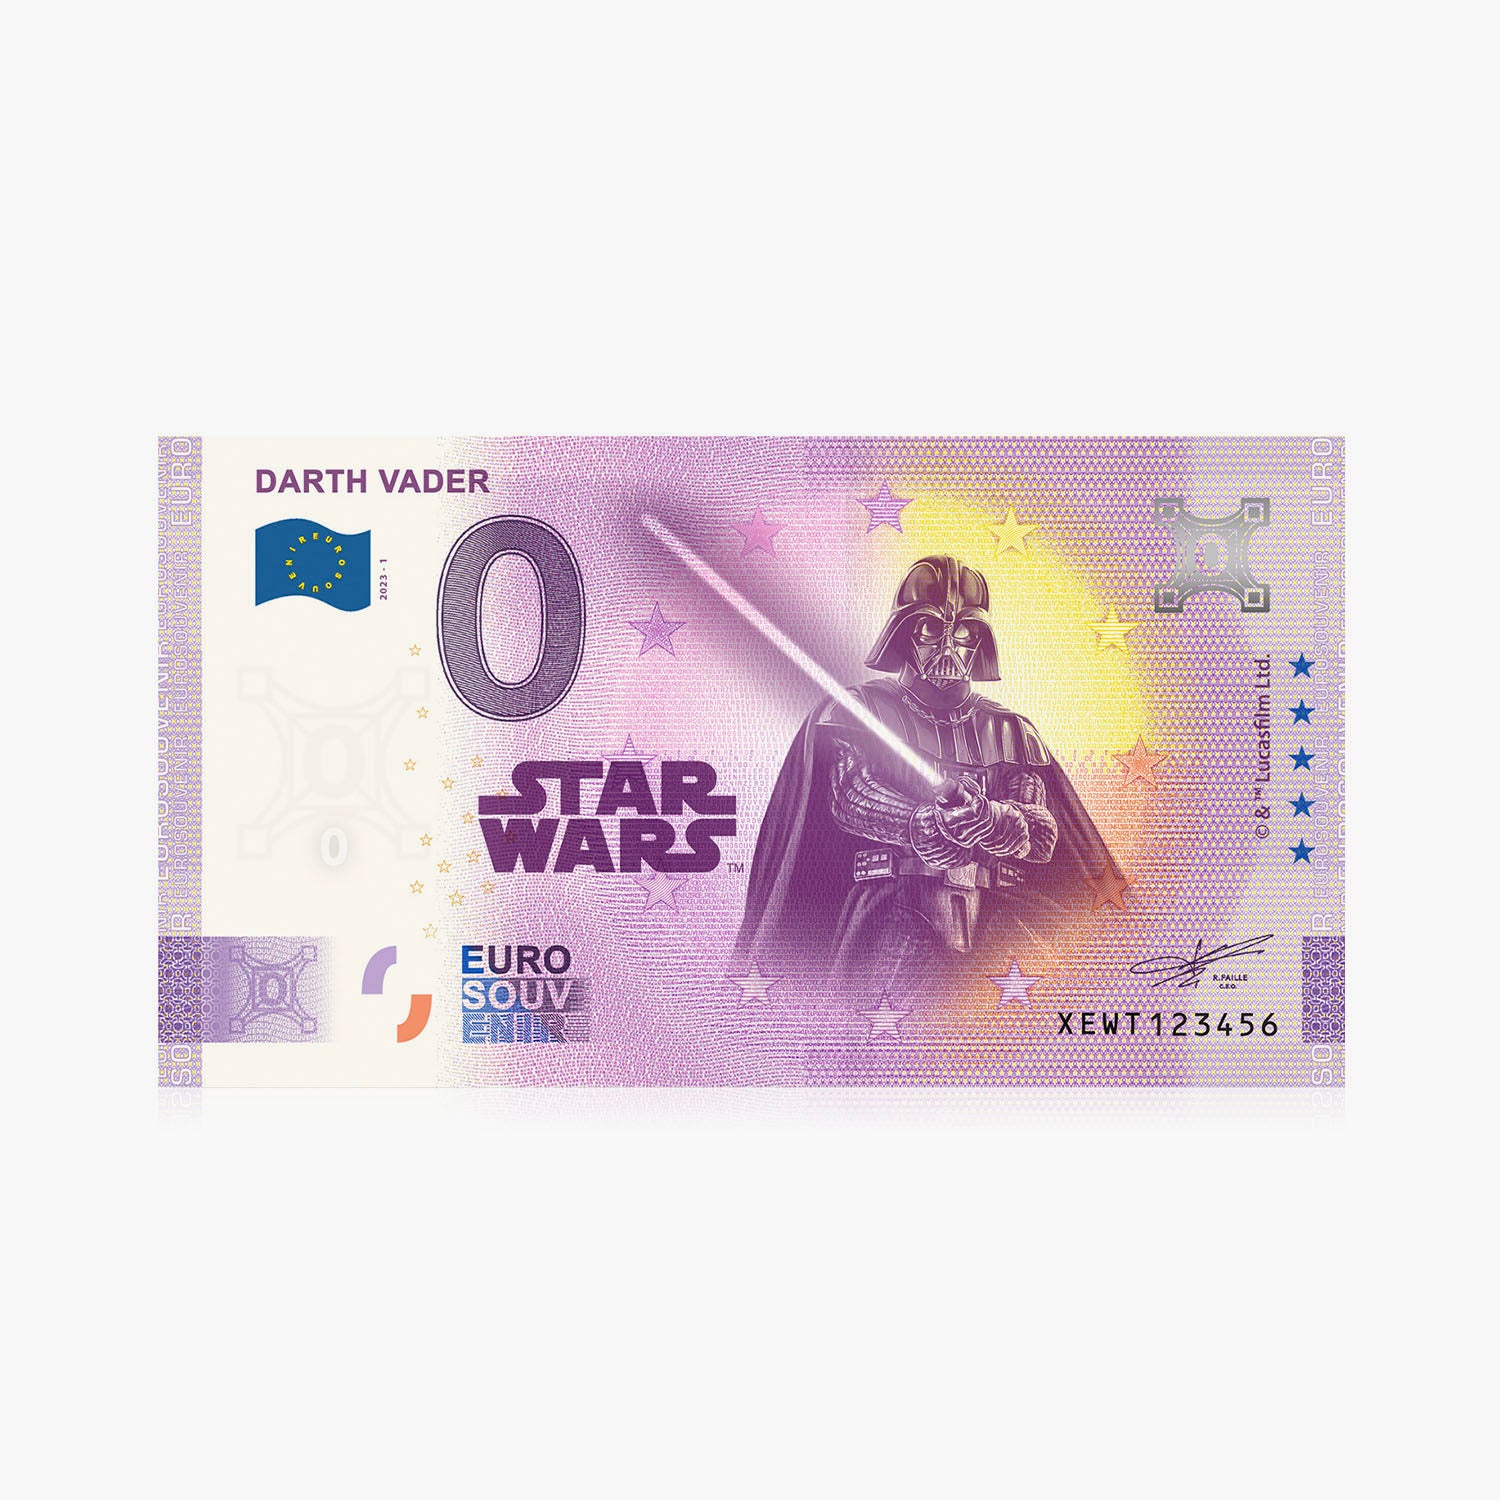 Le billet officiel Star Wars Darth Vader 0 euro